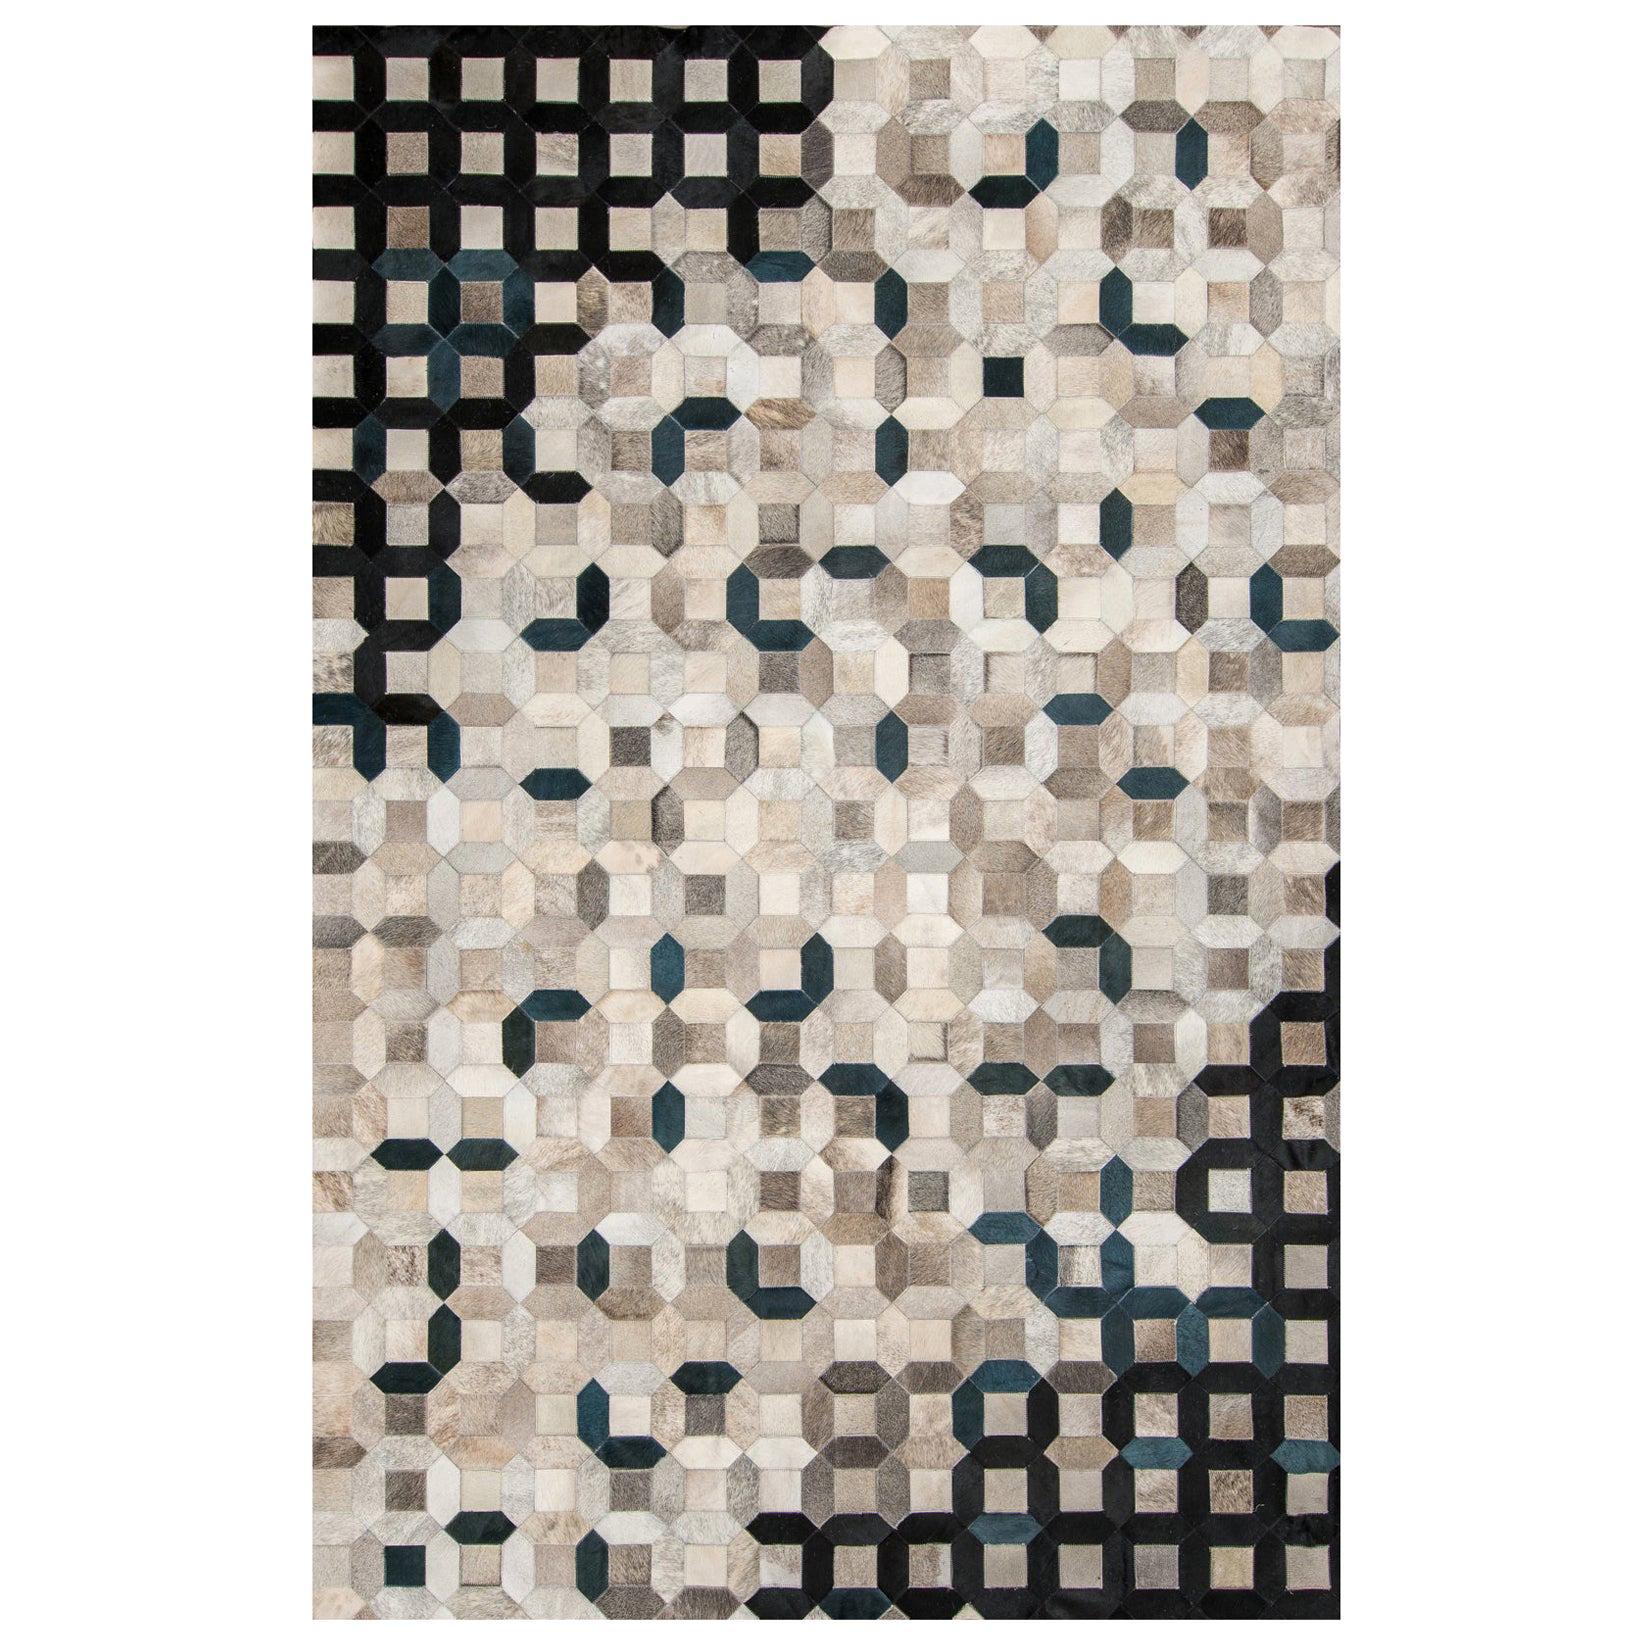 Black, gray tessellation Trellis Cowhide Area Floor Rug Large 